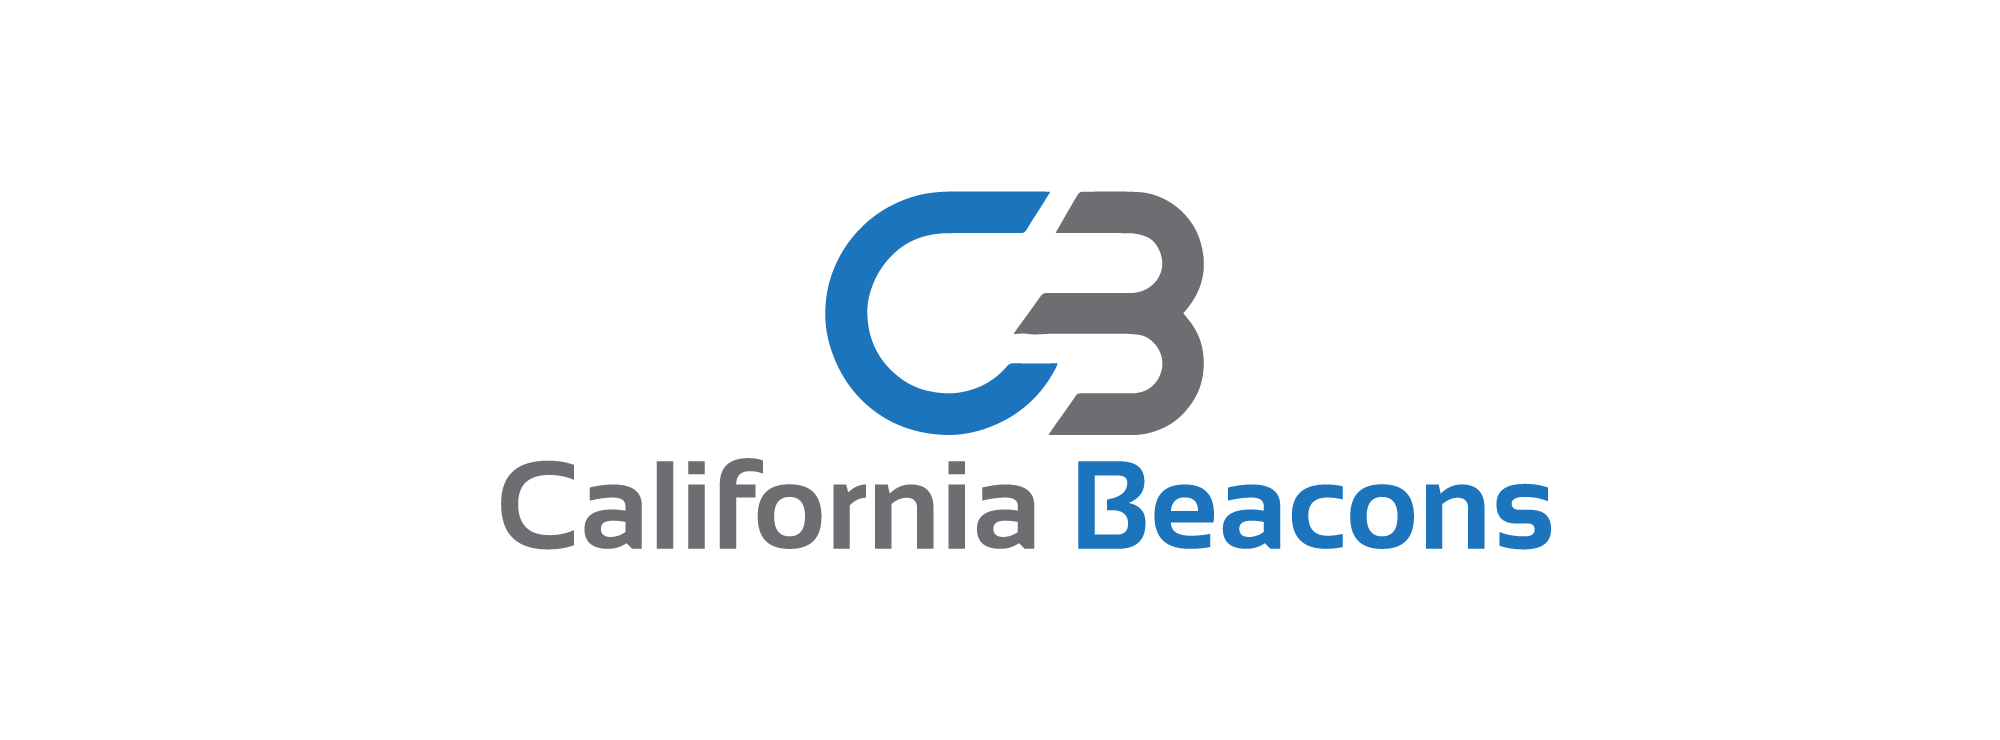 California Beacons 